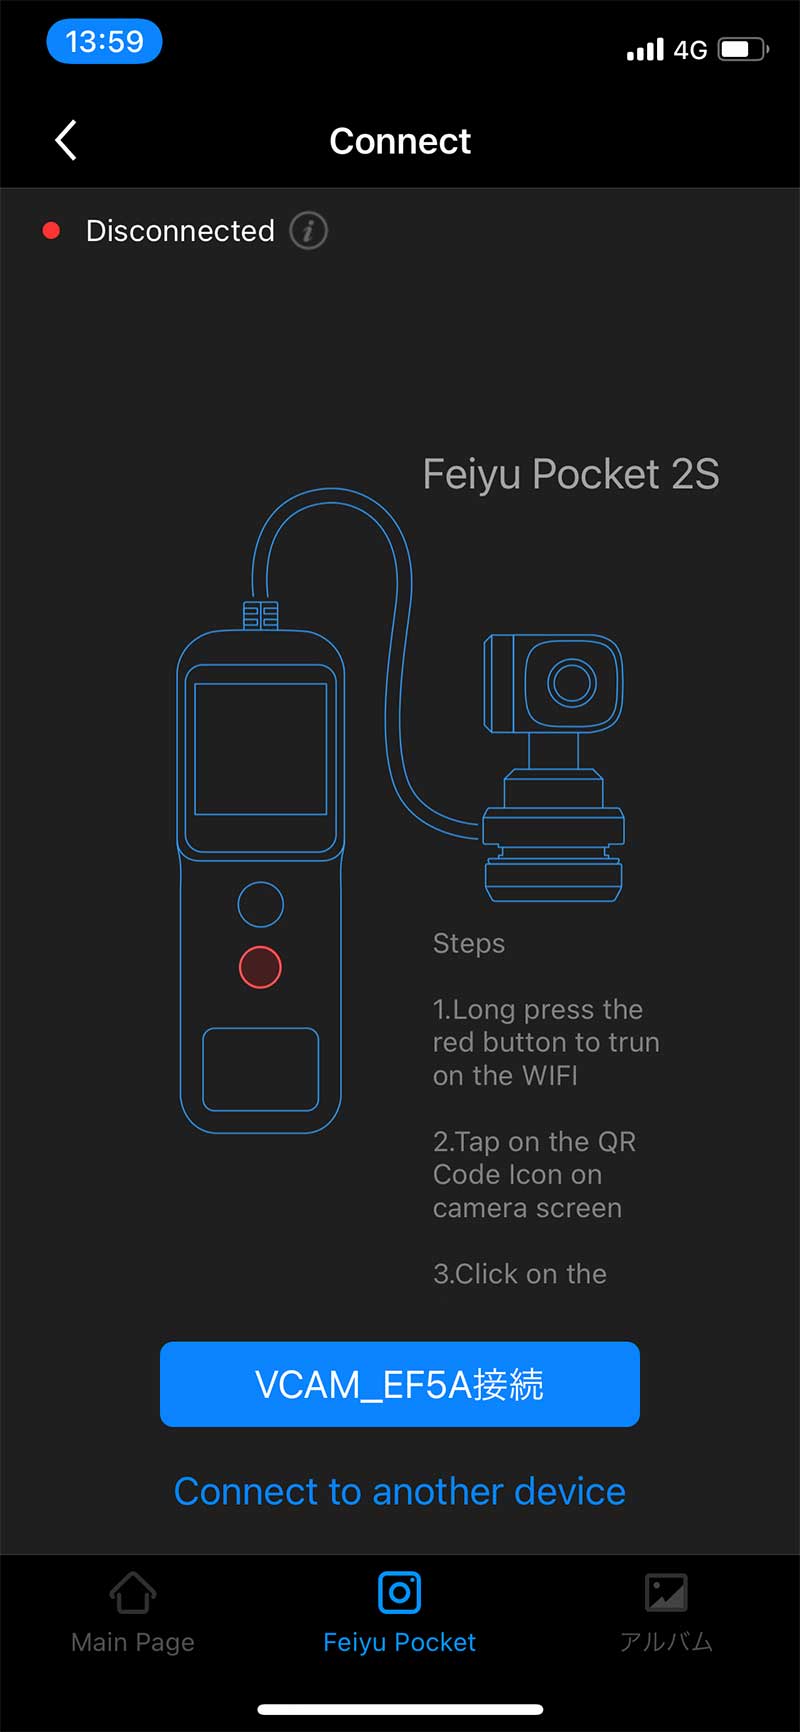 Feiyu Pocket 2S